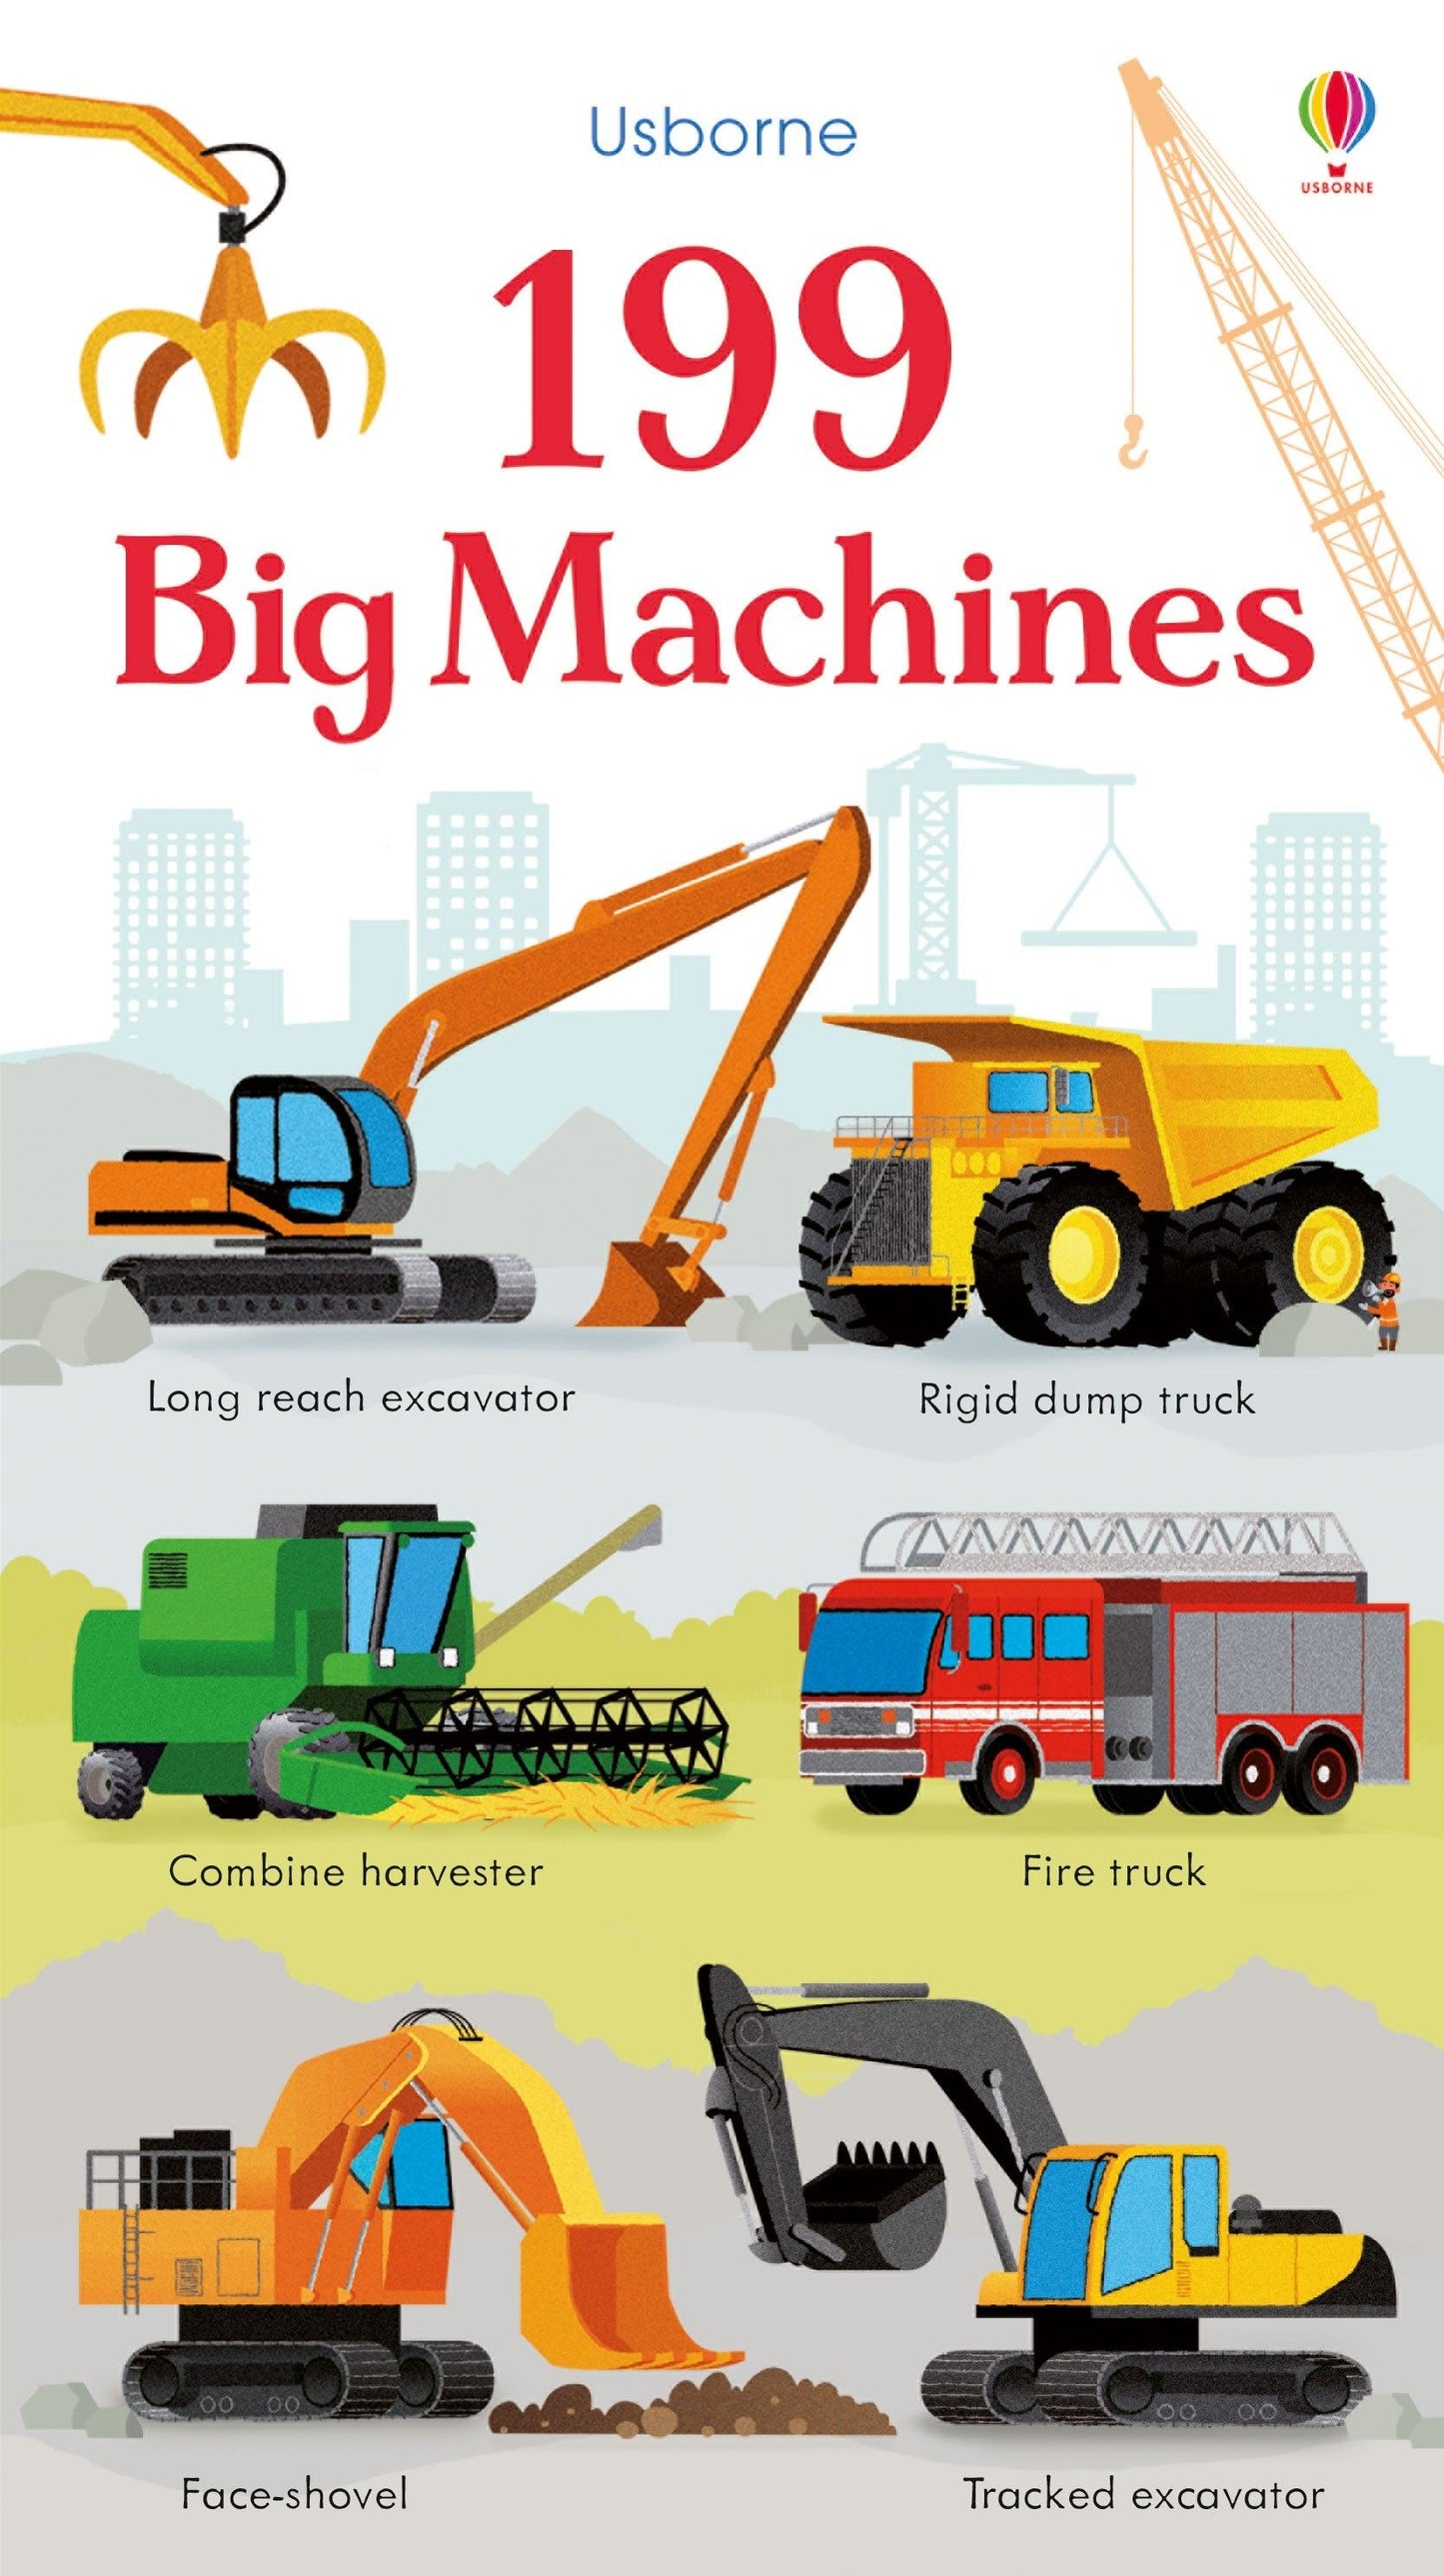 Usborne Books - 199 Big Machines